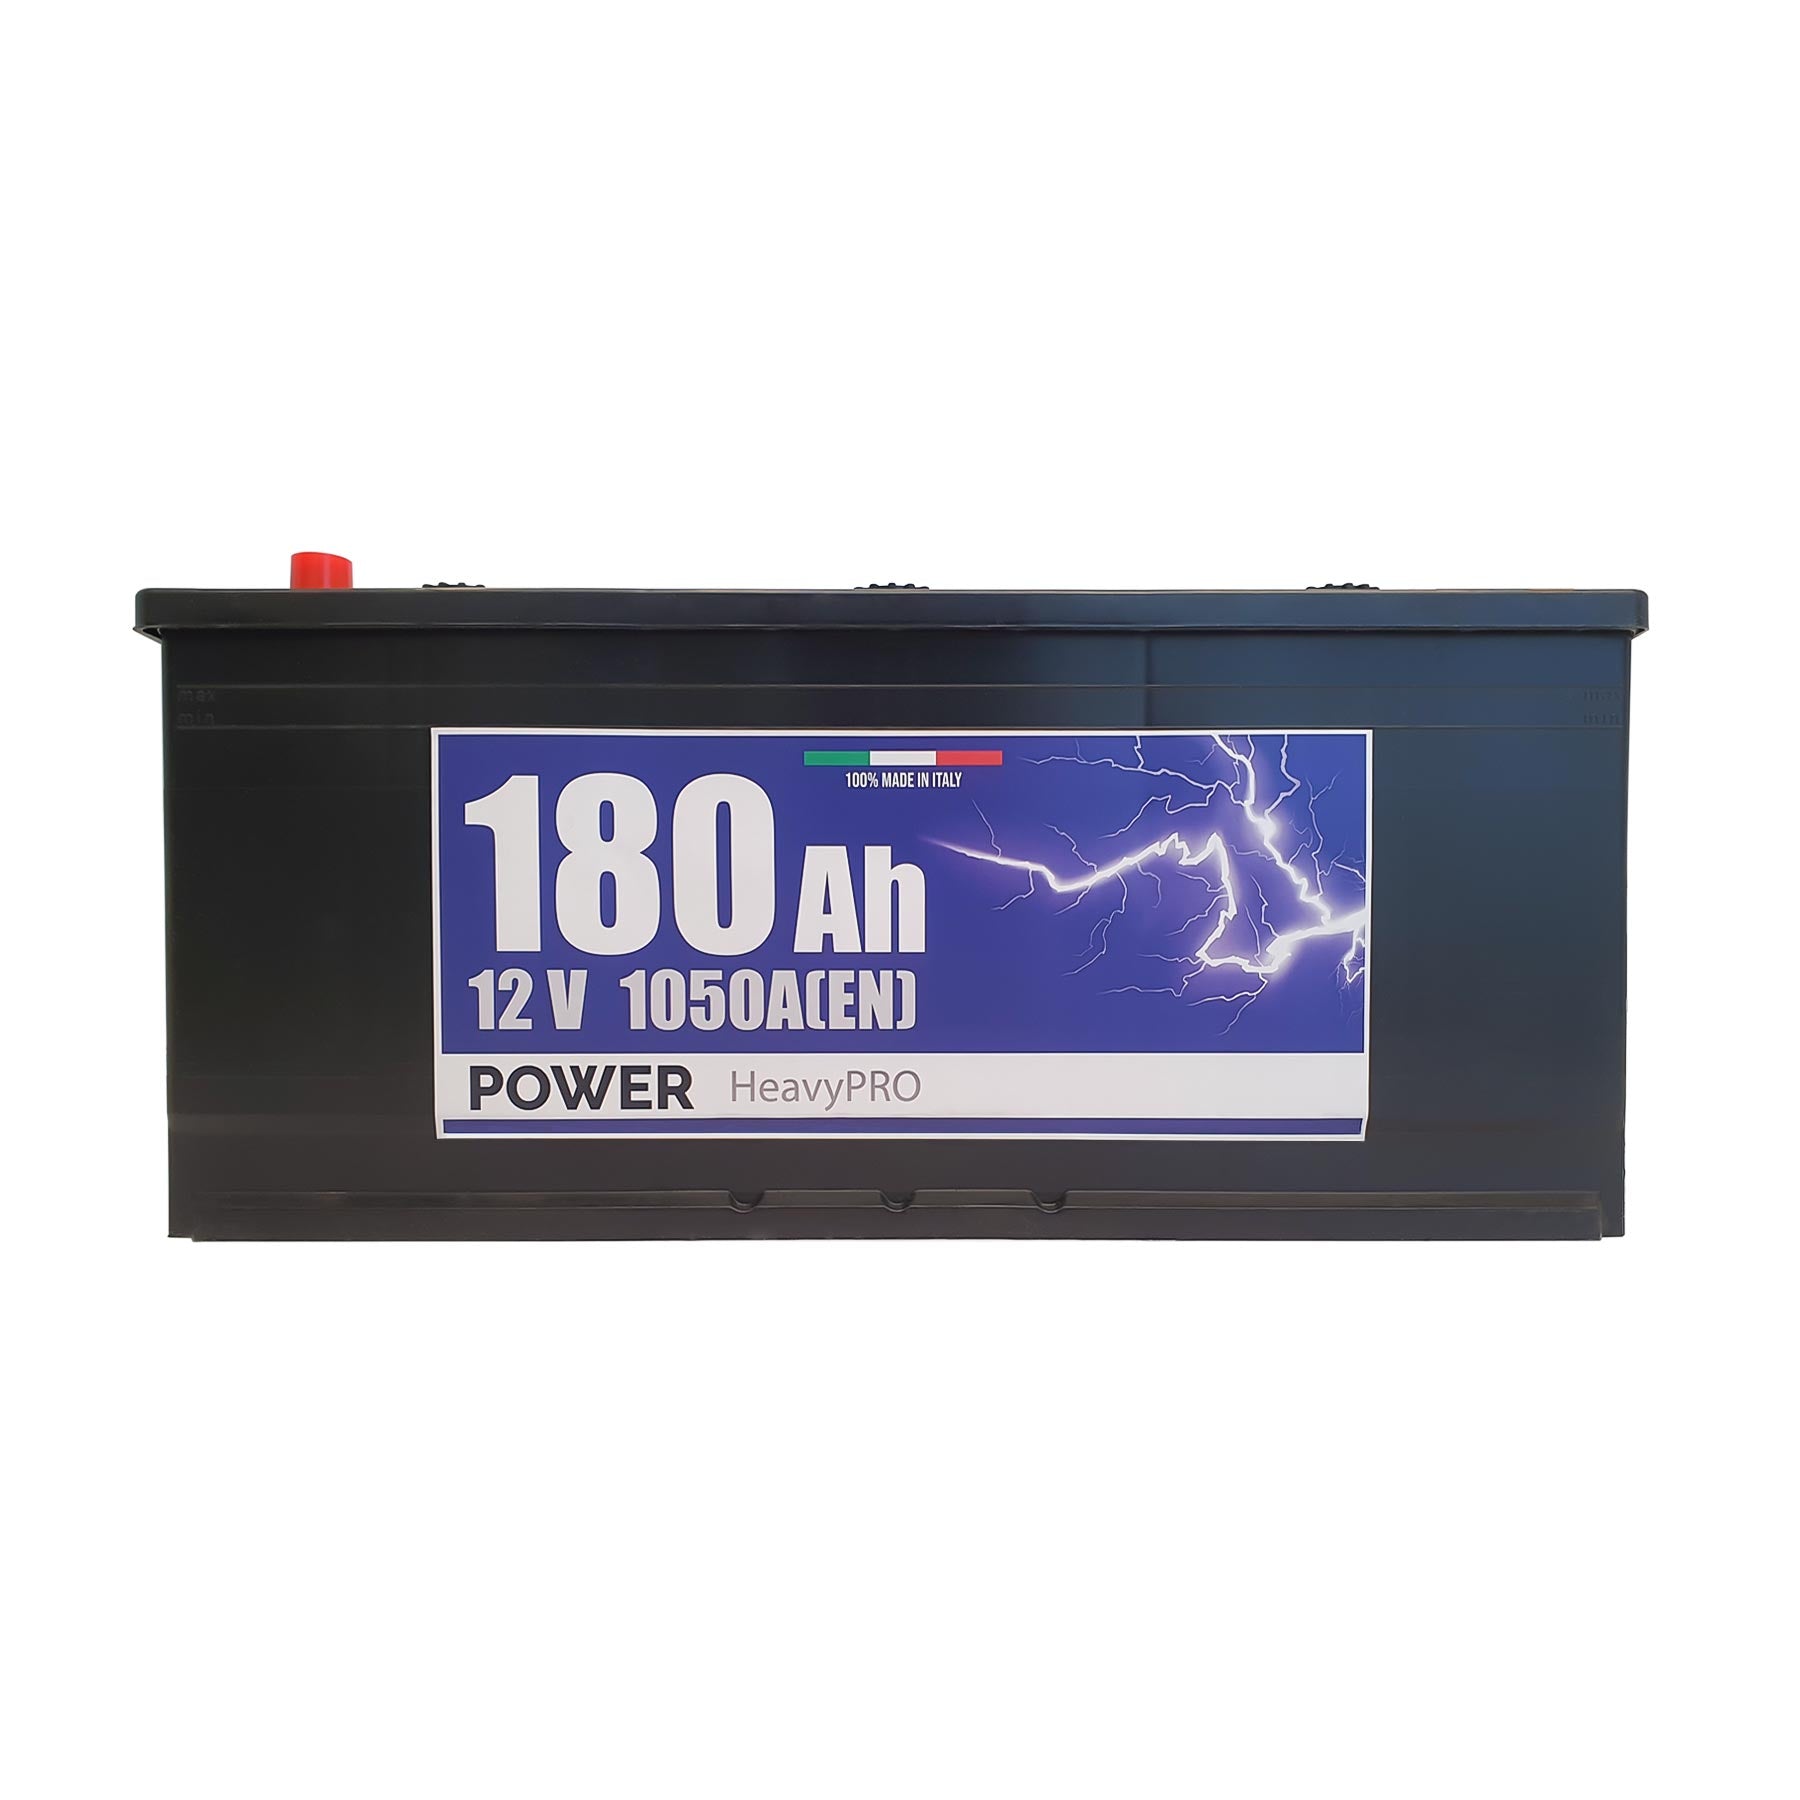 Batteria Power 180Ah, 12V, 1050A, 510x218x225mm